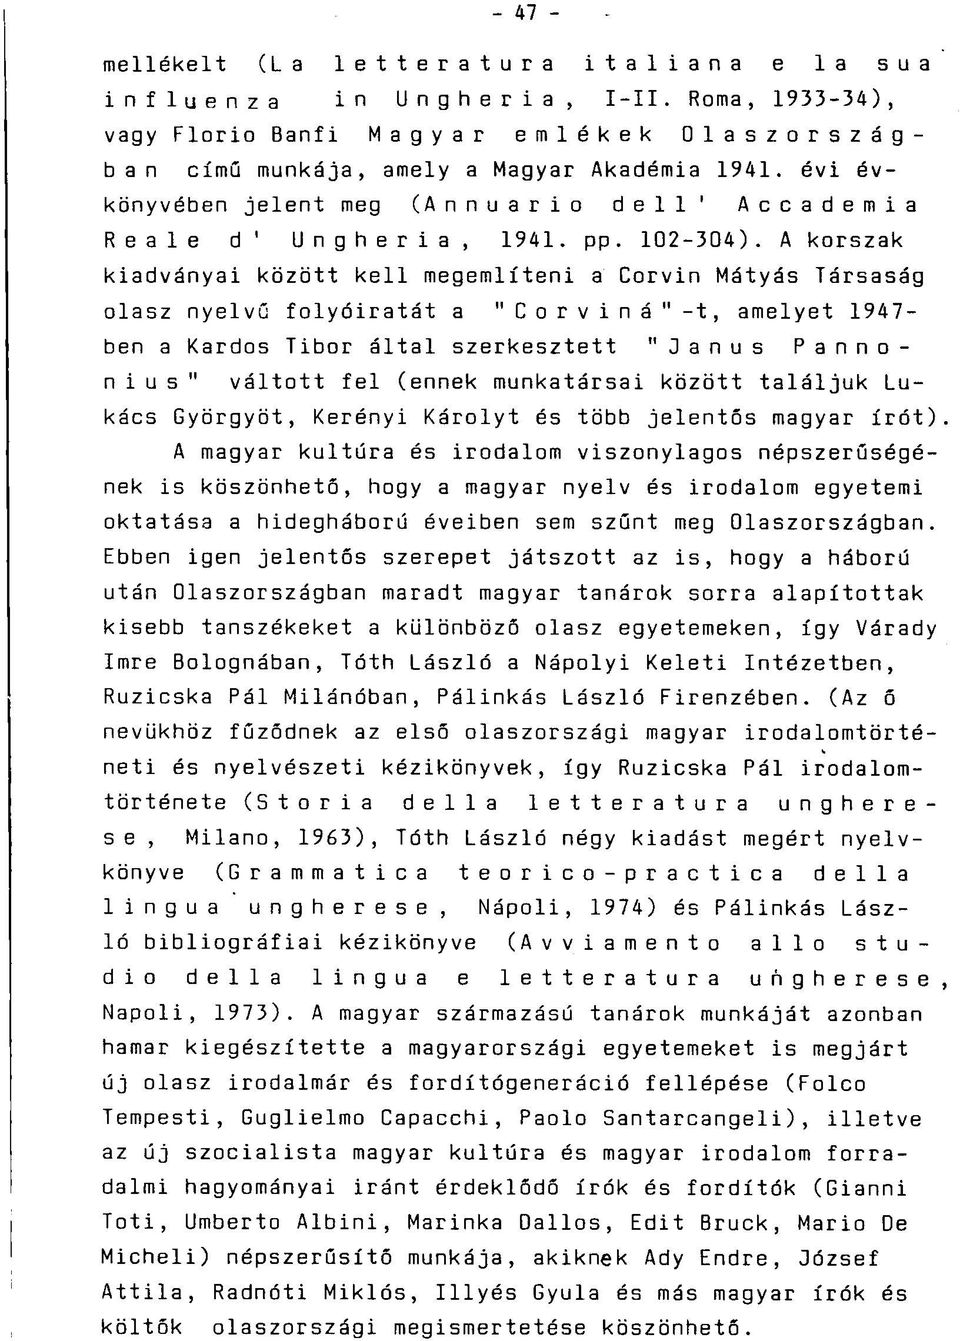 A korszak kiadványai között kell megemlíteni a Corvin Mátyás Társaság olasz nyelvű folyóiratát a " C o r v i n á " -t, amelyet 1947- ben a Kardos Tibor által szerkesztett "Janus Pannonius" váltott